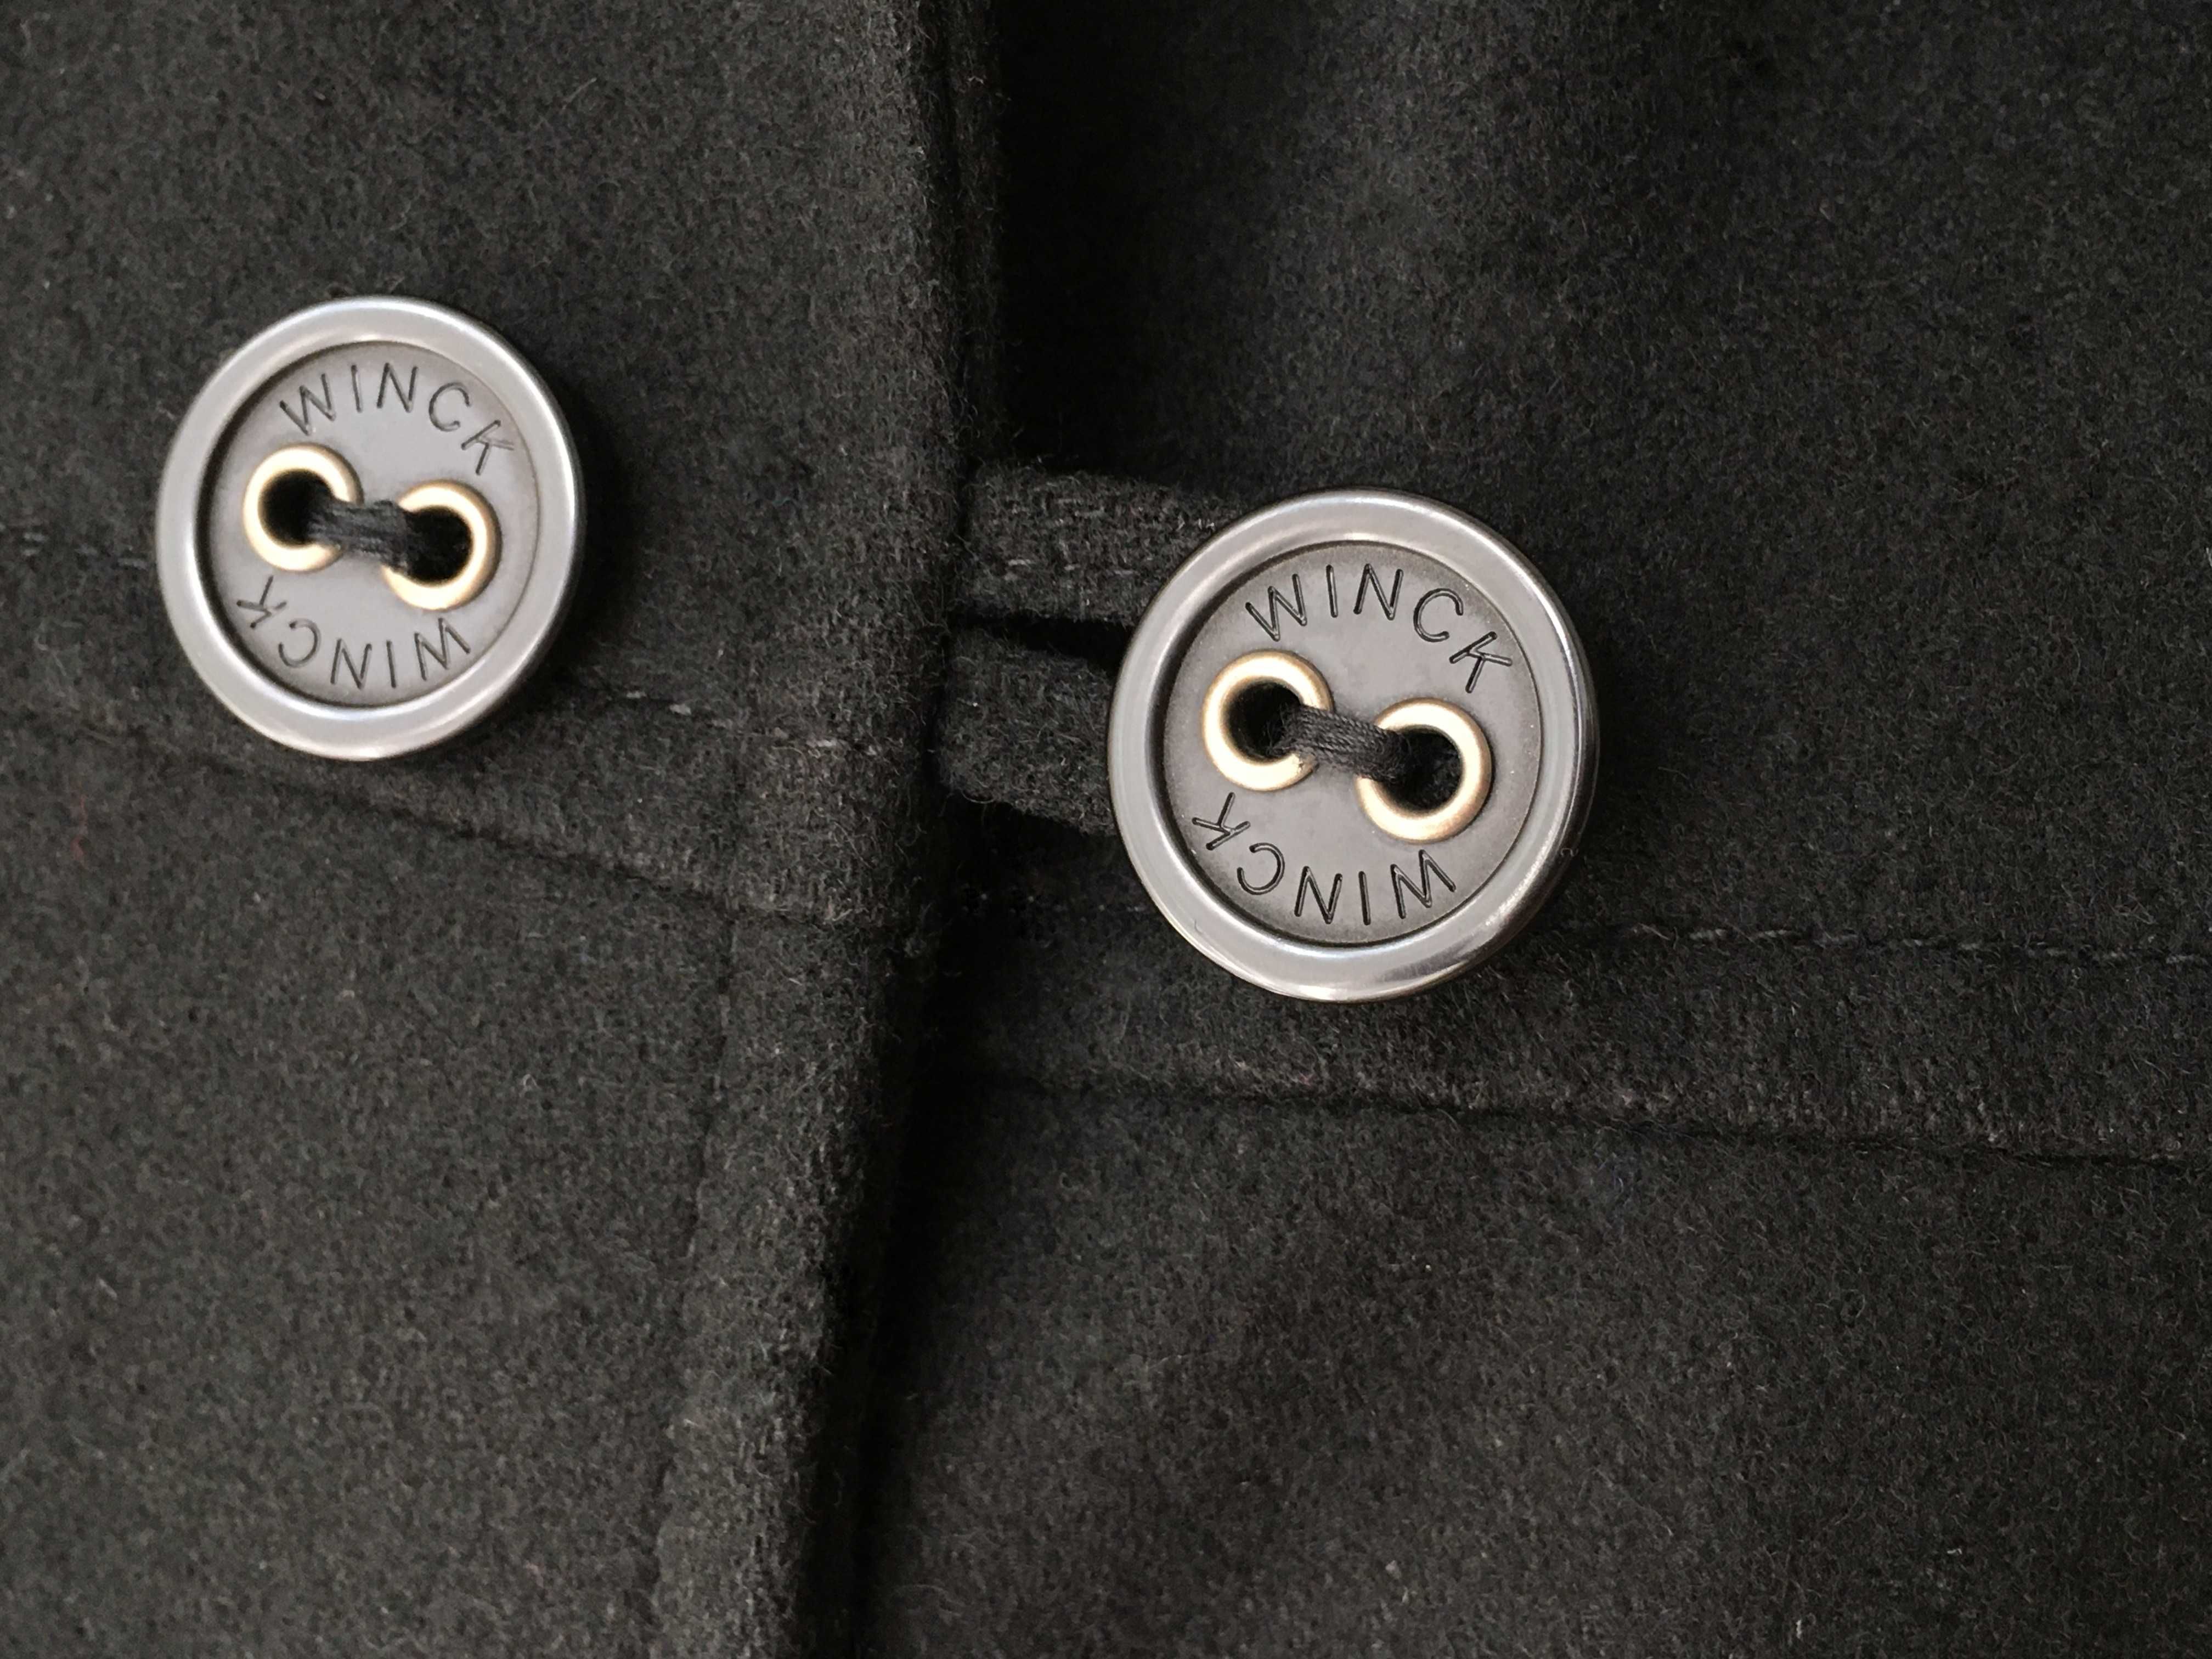 WINK przejściowy płaszcz wełniany wełna czarny trencz dwurzędowy 38